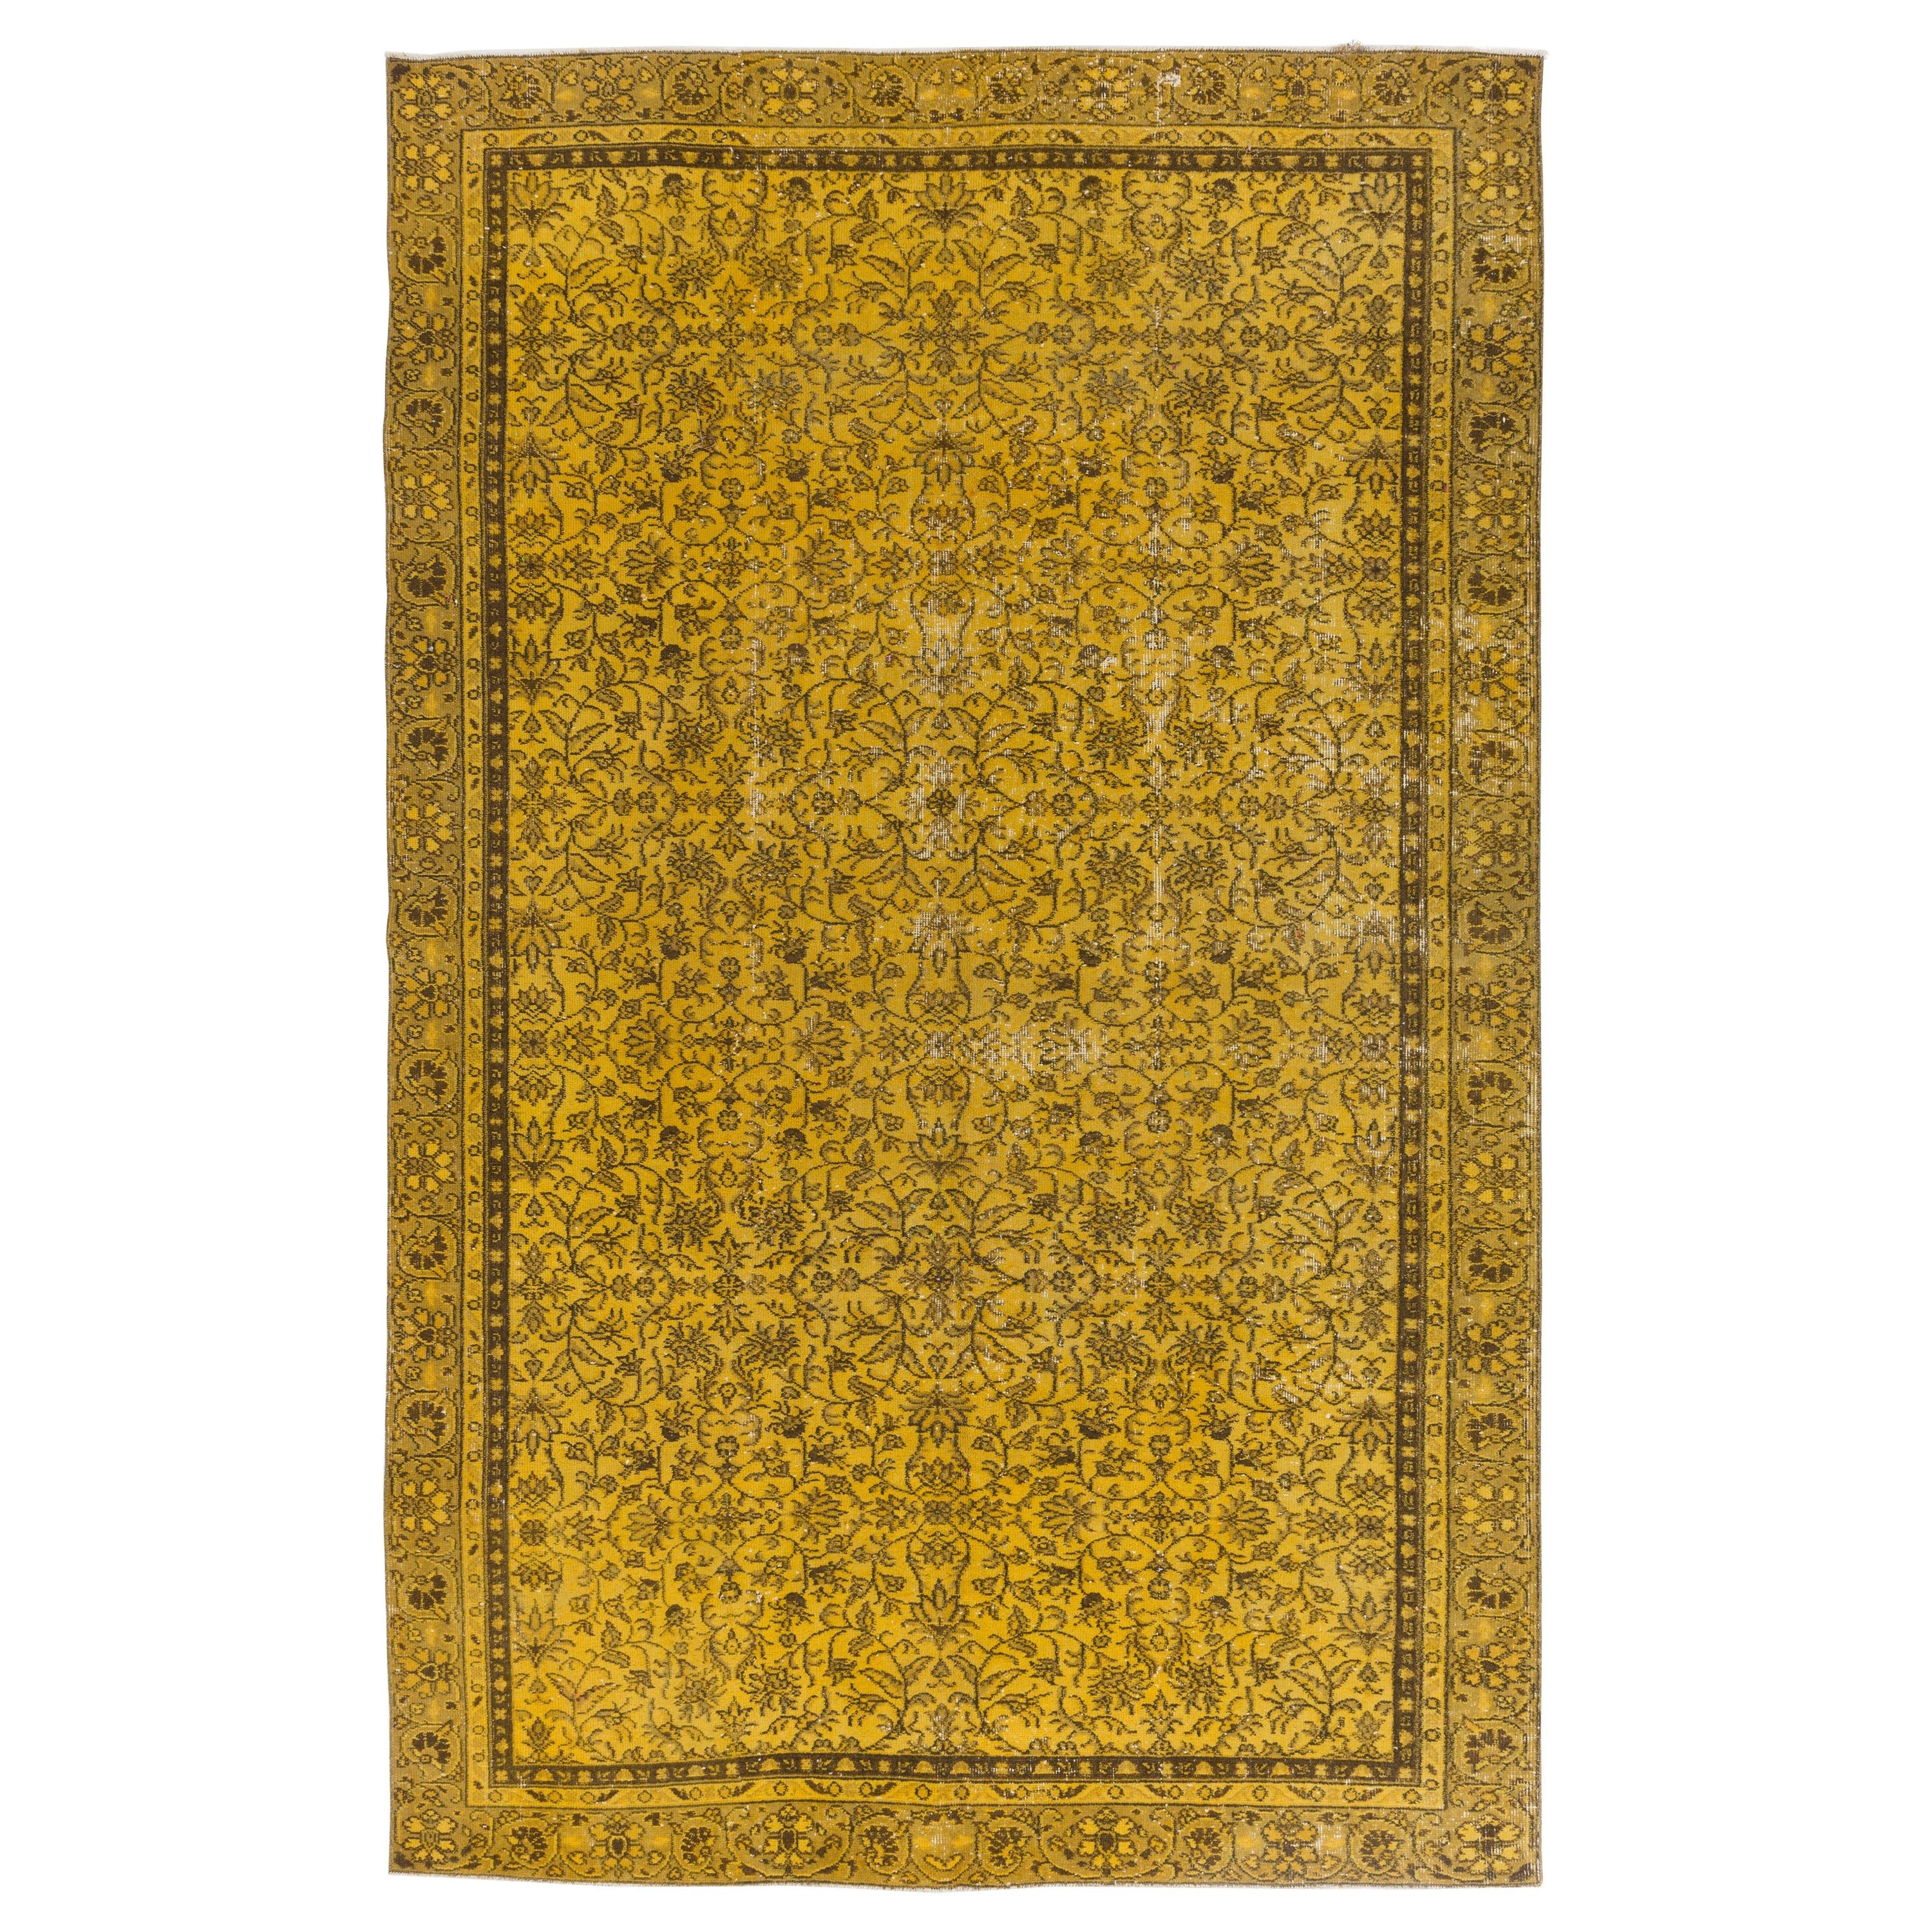 Moderner handgefertigter Teppich in Gelb, floral gemusterter türkischer Teppich